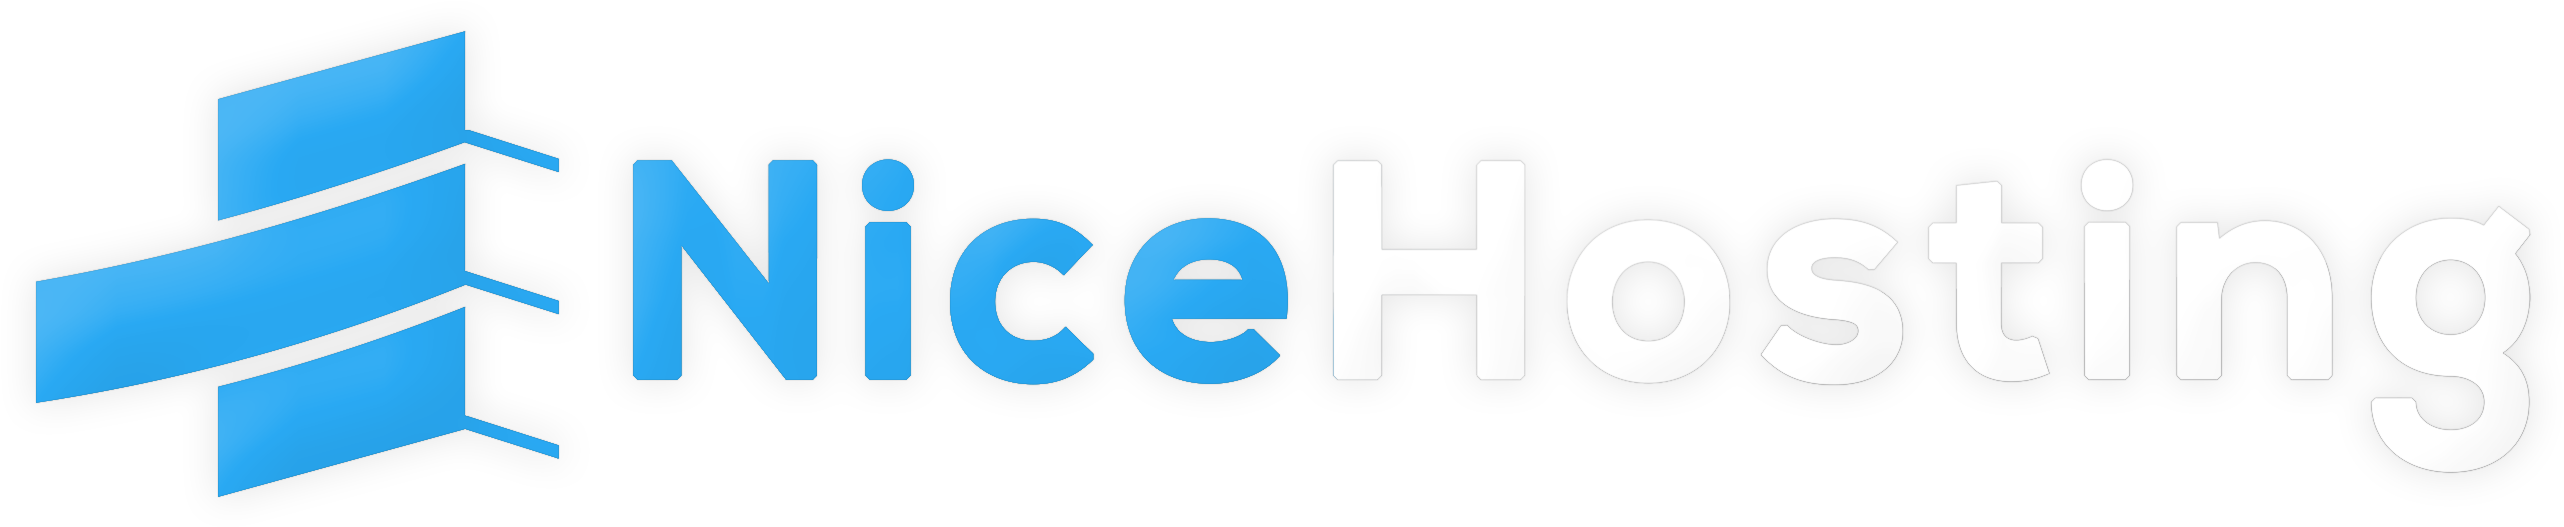 Nice-hosting Logo - Nice Hosting (2667x557), Png Download